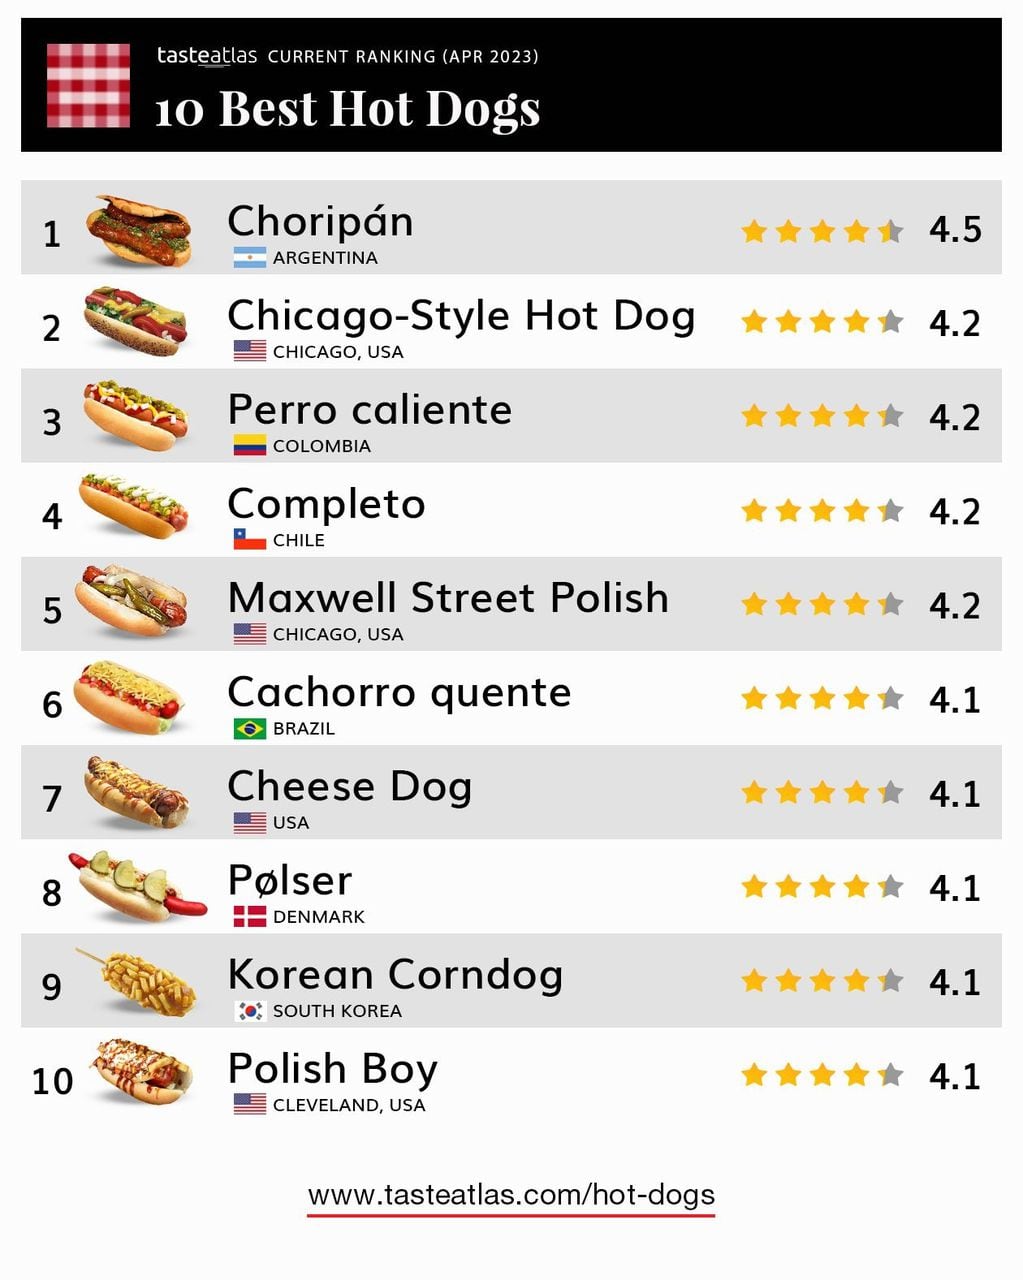 Taste Atlas siempre reconoce el sabor del “choripán” en sus notoas gastronómicas (Captura de pantalla).